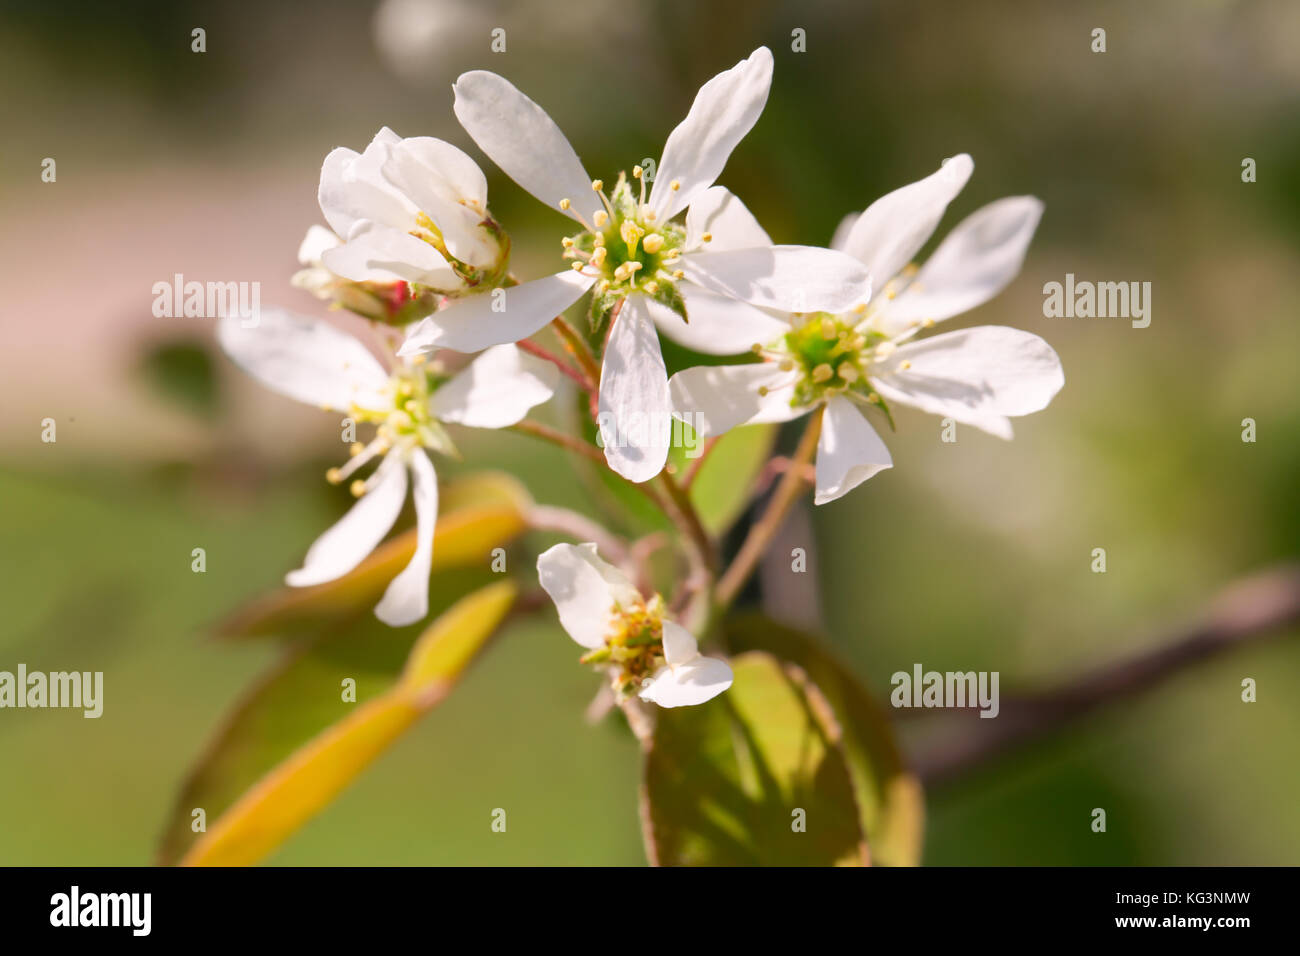 Il bianco dei fiori di un mespilus illuminata con il sun. close up, macro, la molla scatti, indistinto Foto Stock